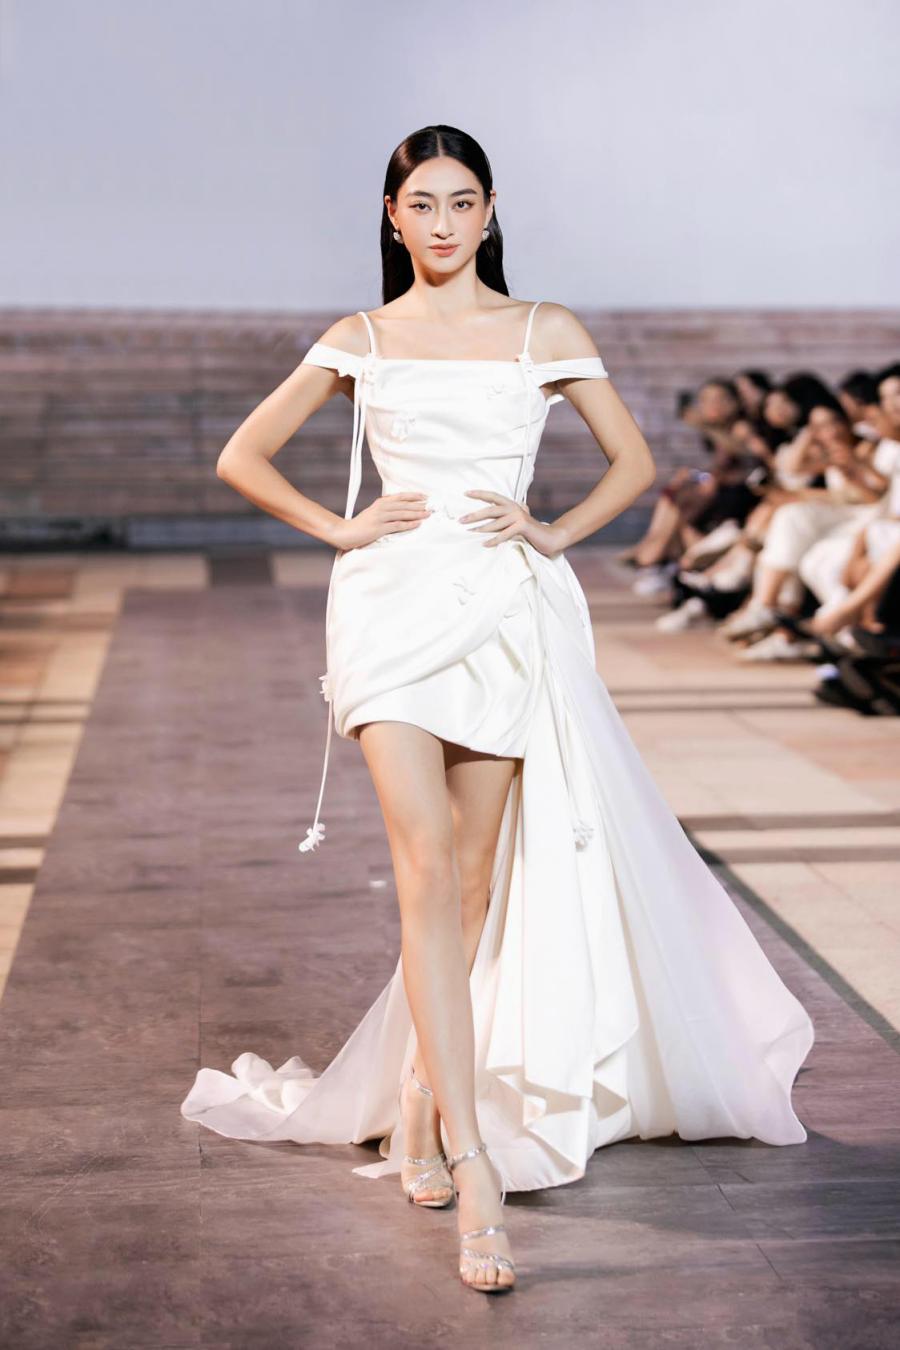 Lương Thuỳ Linh là người đẹp được đánh giá cao về tài năng lẫn sắc vóc trong dàn hoa hậu Việt Nam.